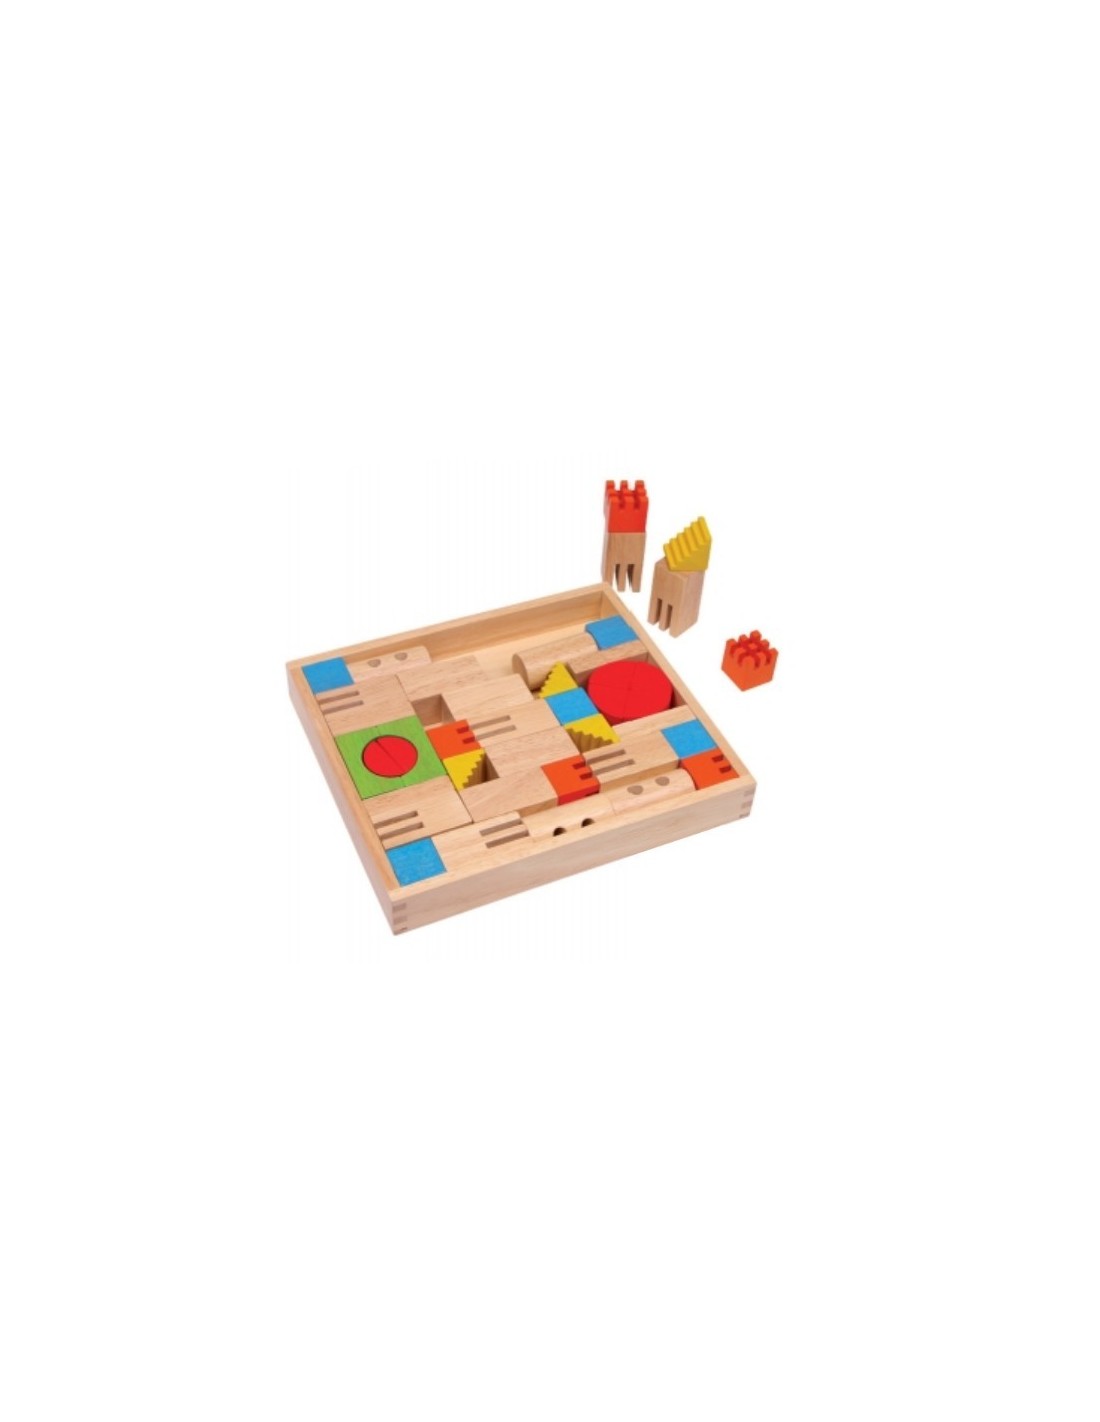 Caja construcción con piezas de madera bloques de madera para juego de creatividad infantil